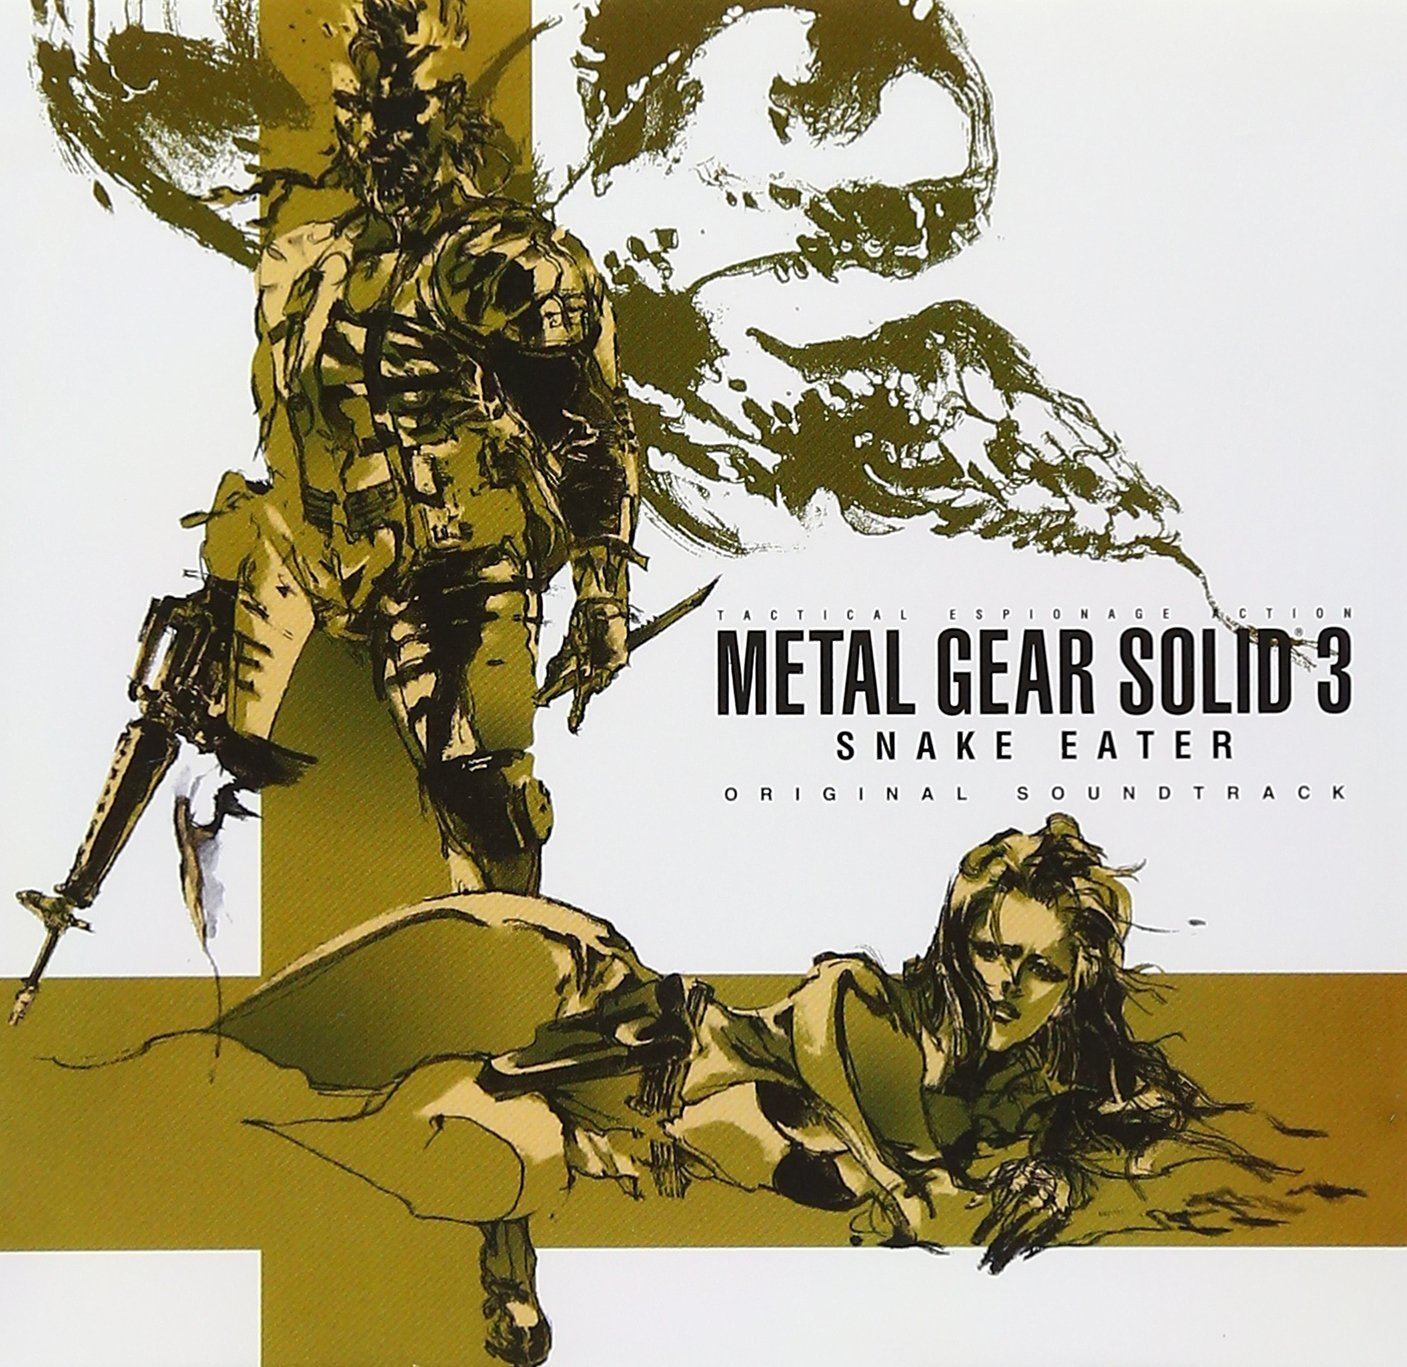 Video Game Soundtrack - Metal Gear Solid 3 Snake Eater Original Soundtrack